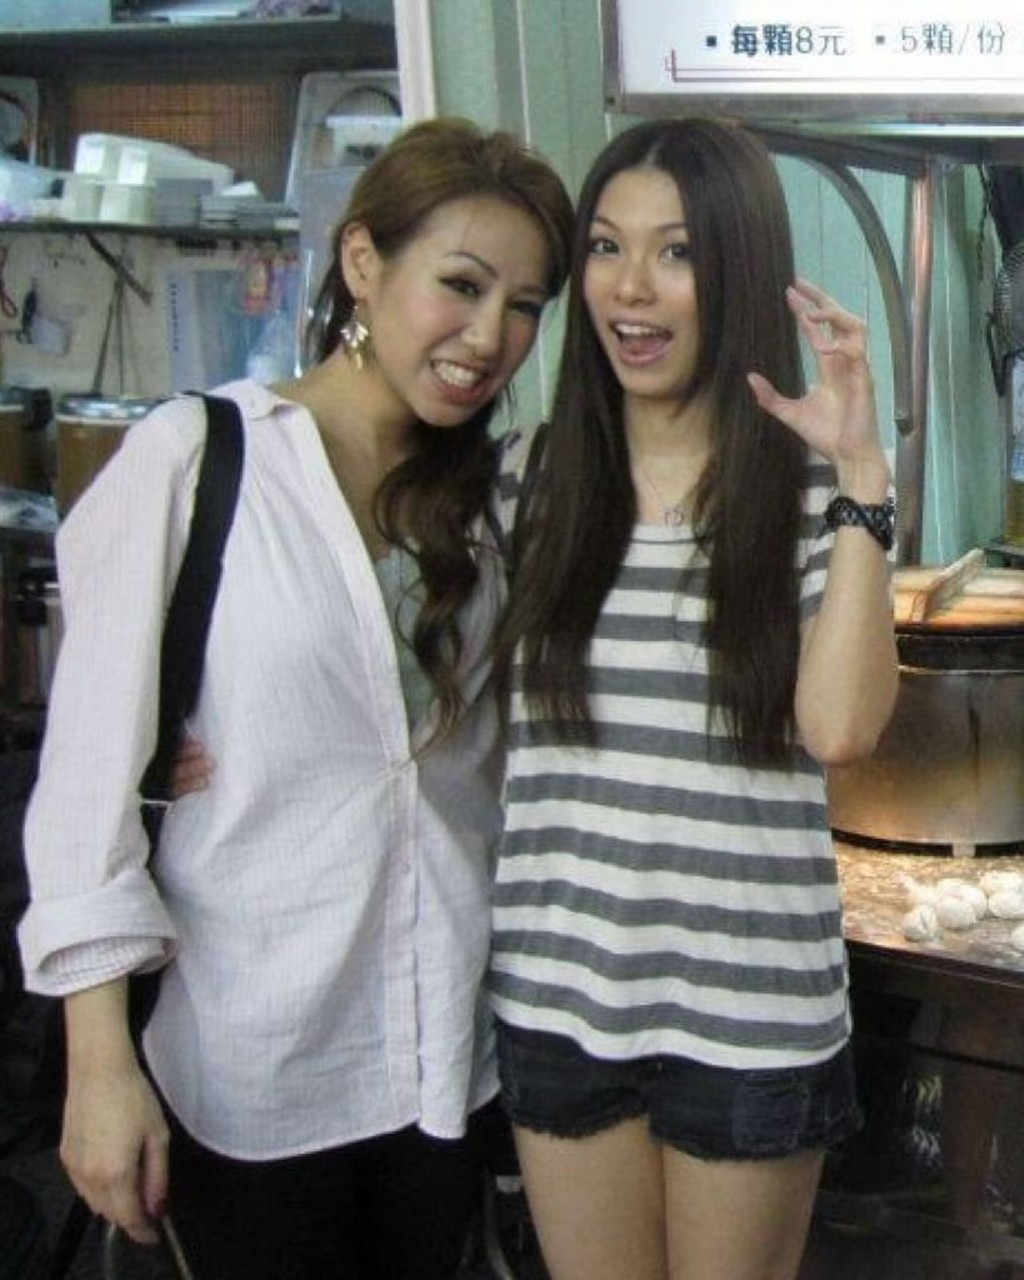 當年曹敏寶與李潔瑩打扮青春性感現身食店外影合照。